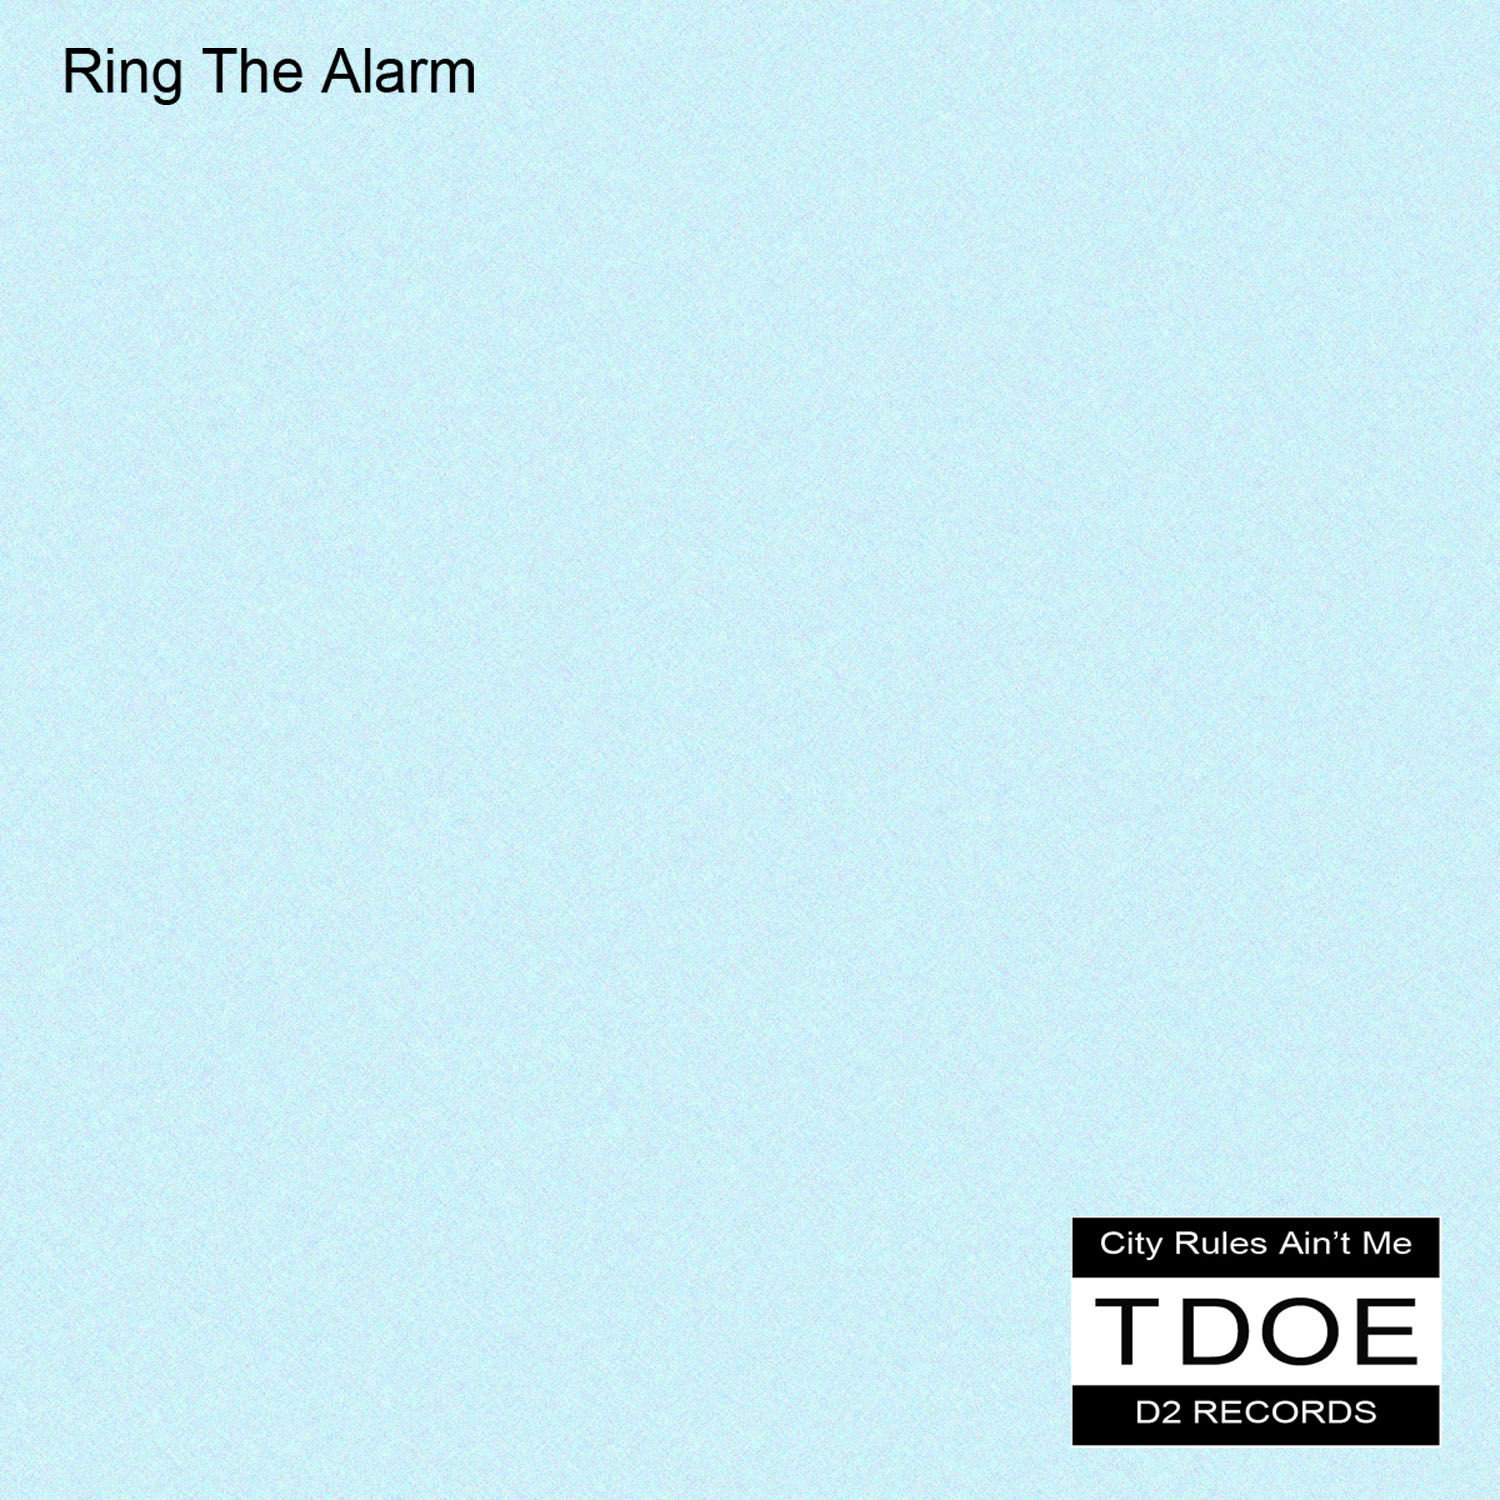 Ring The Alarm Cover Art.jpg